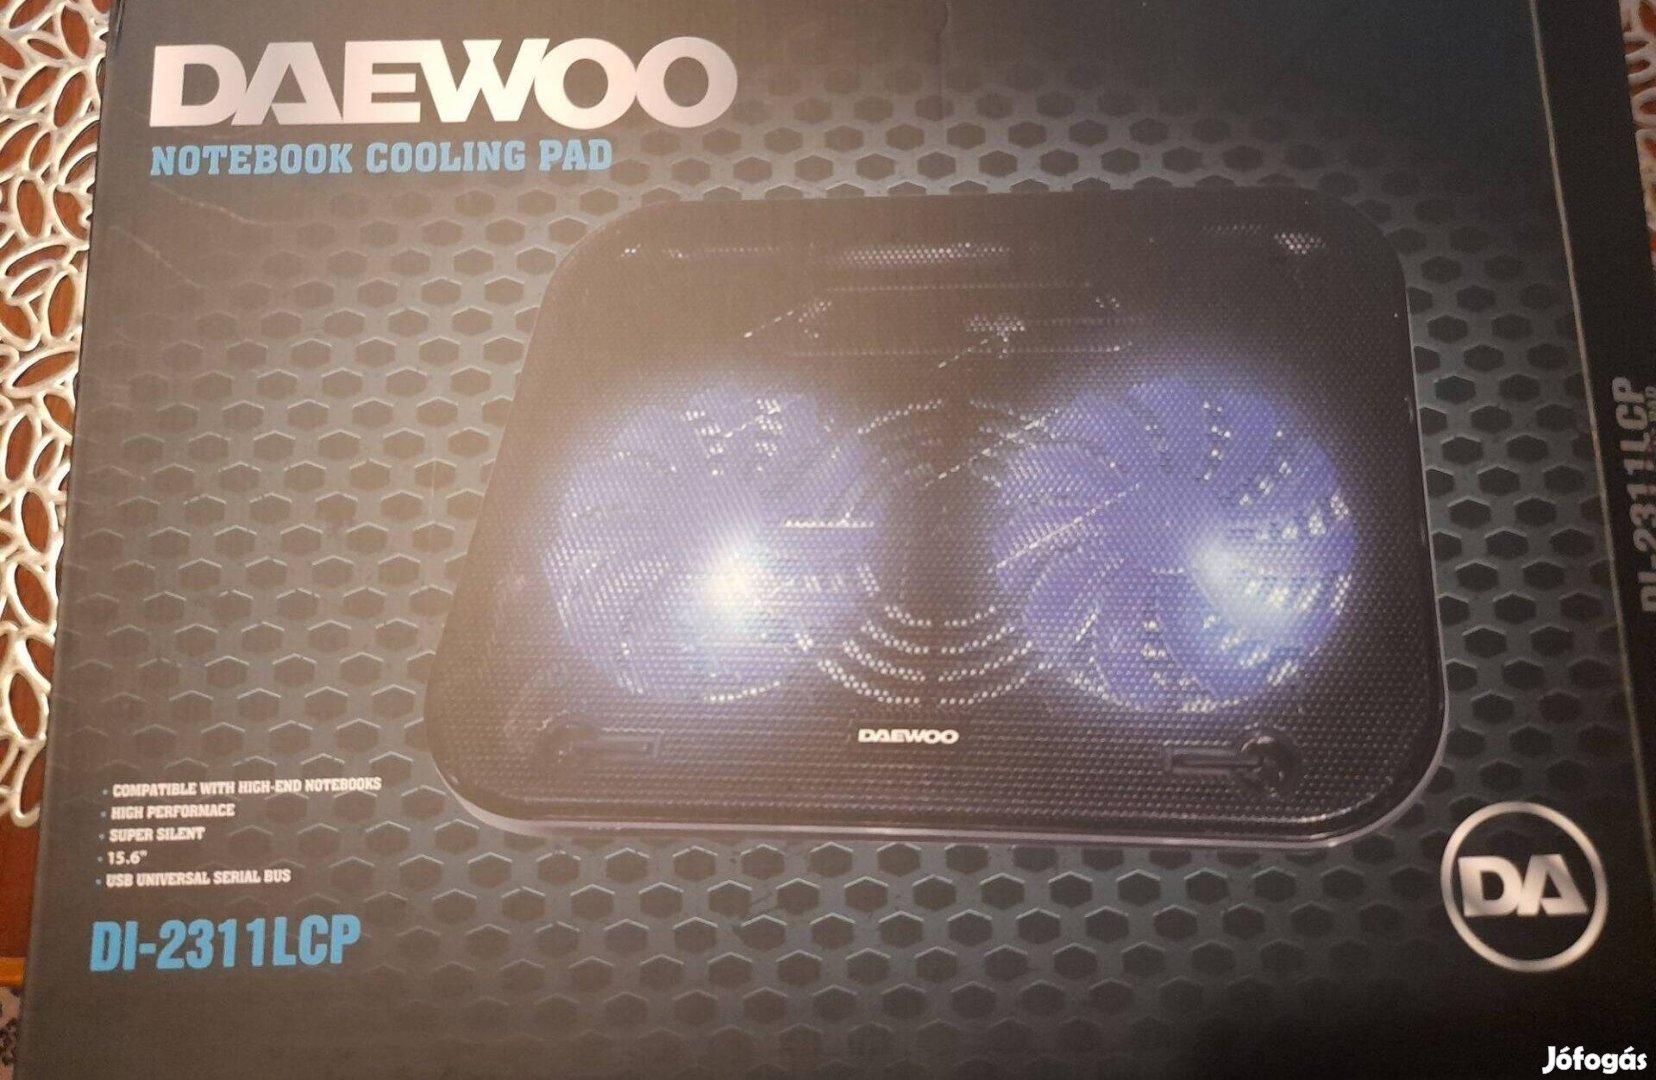 Daewoo hűtőventilátor laptophoz, ventilátoros laptop hűtő